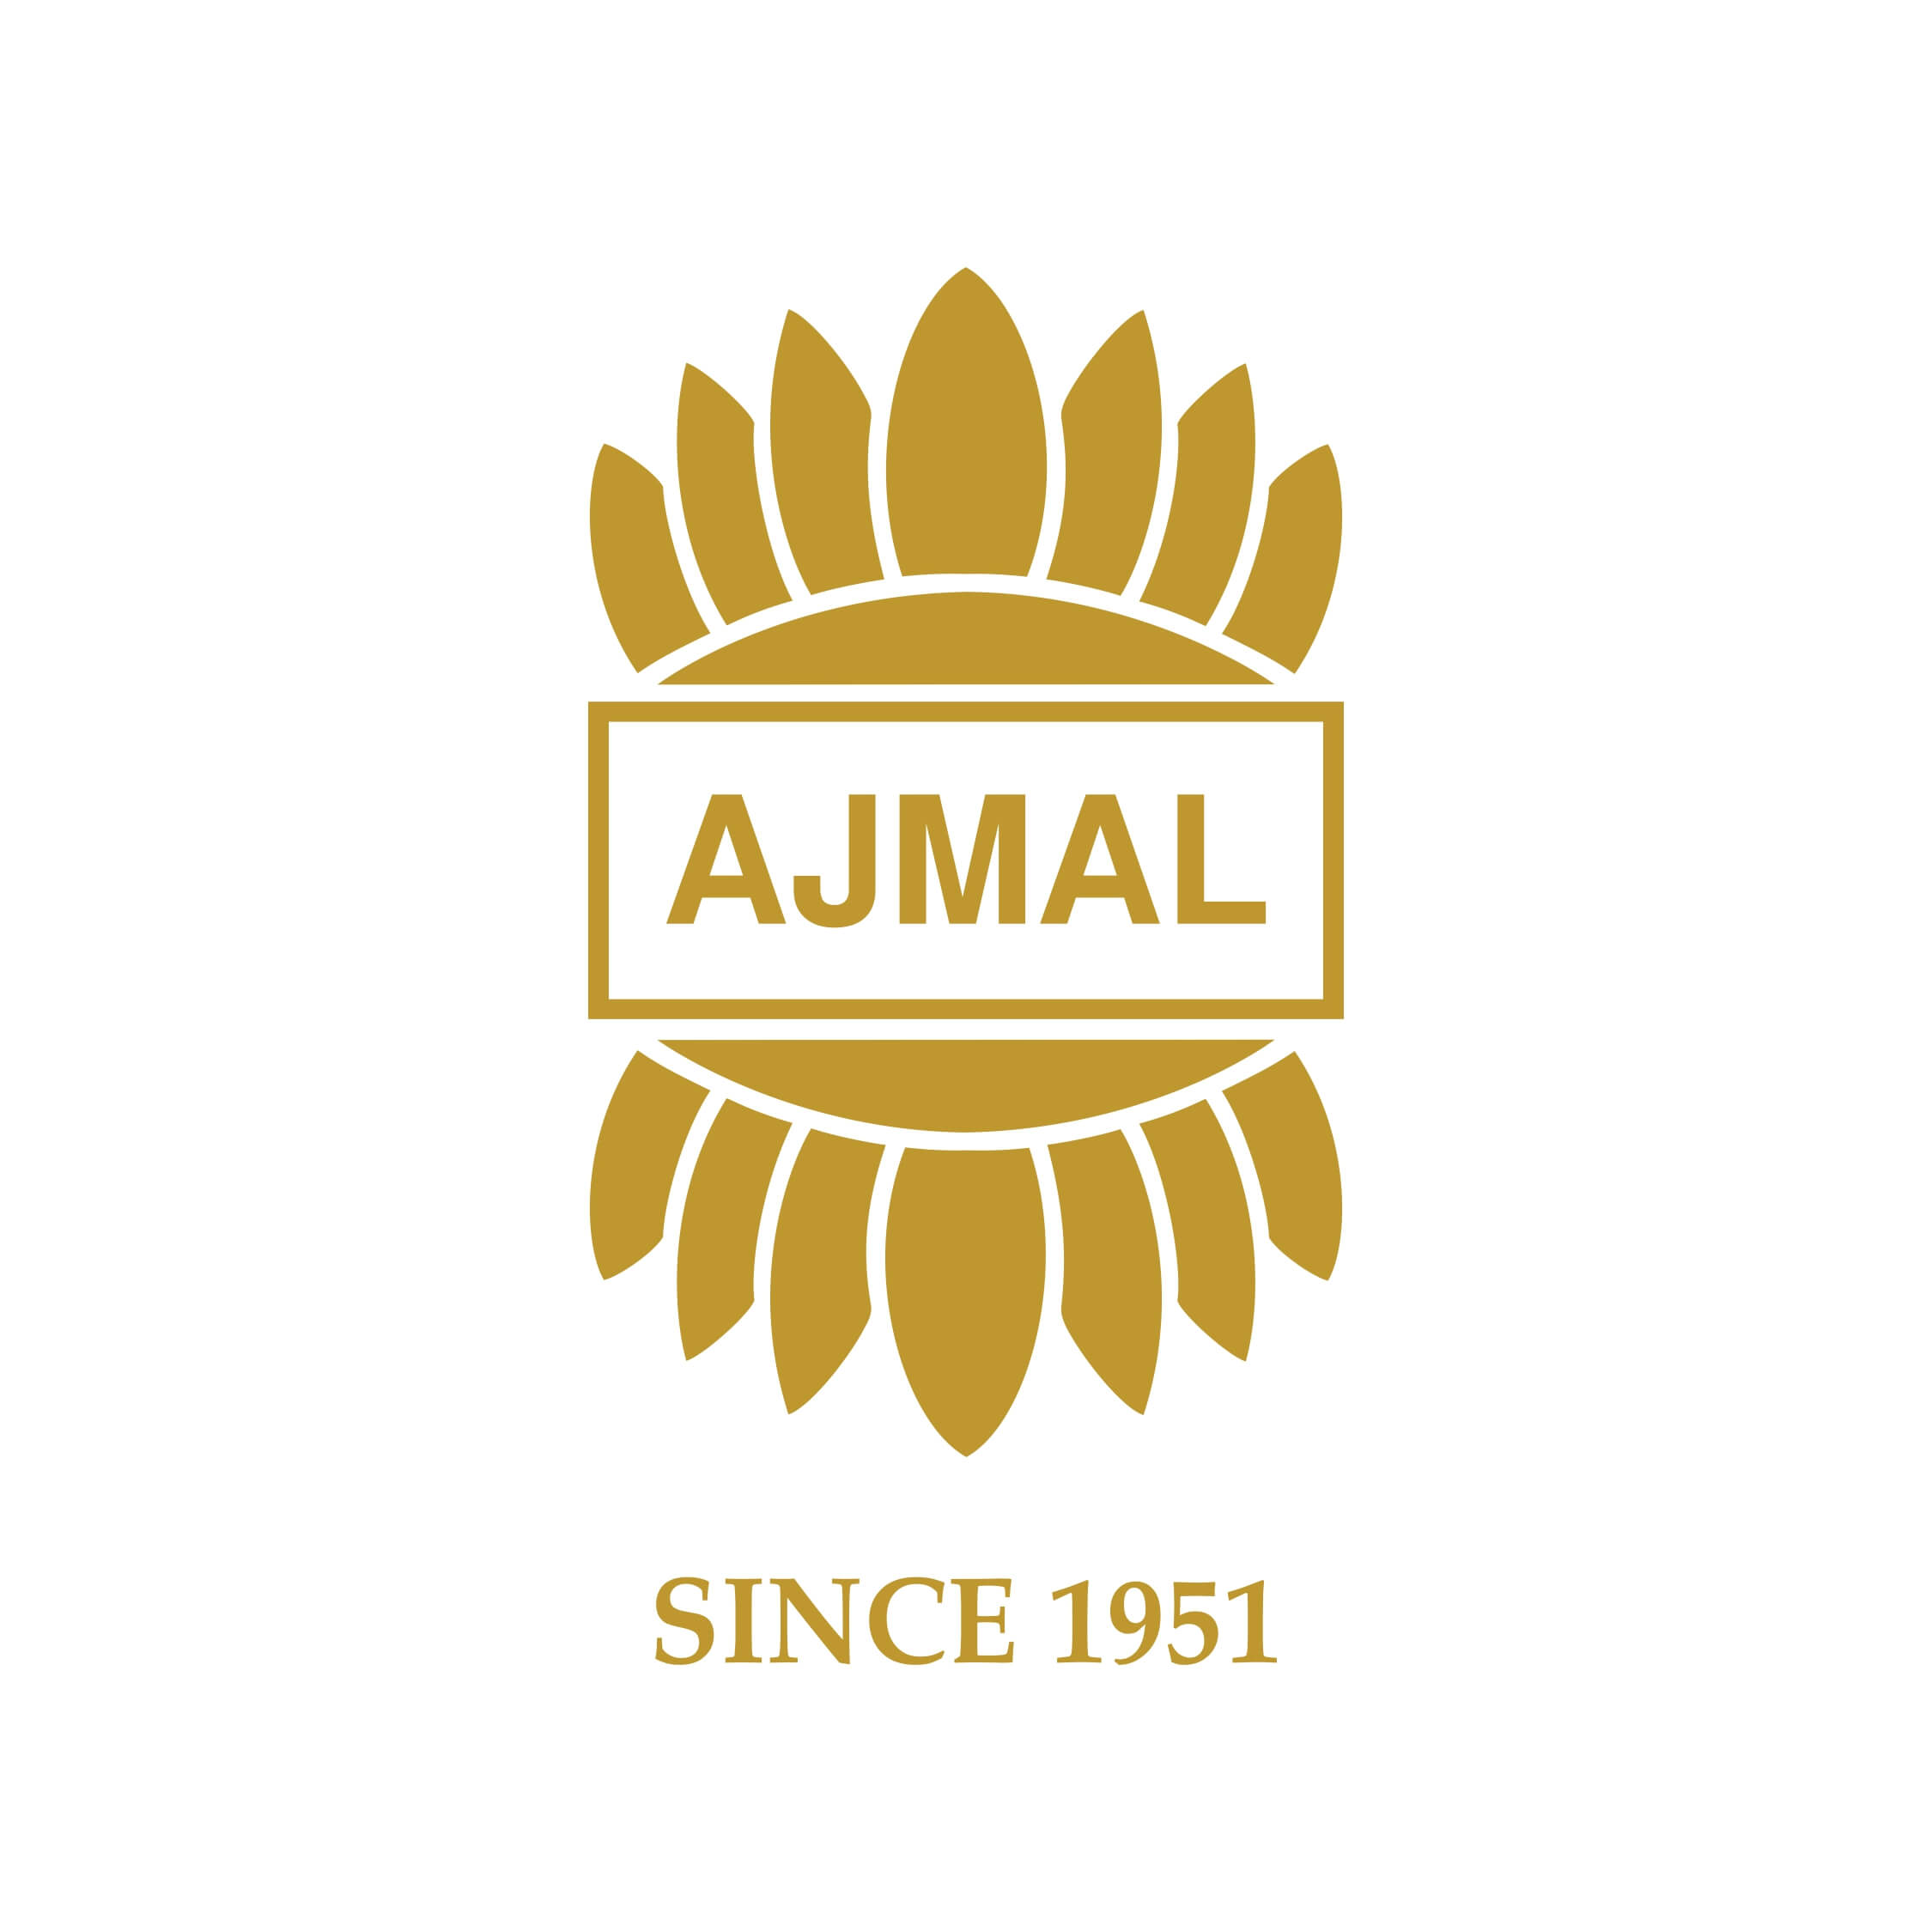 Amjal Logo 1